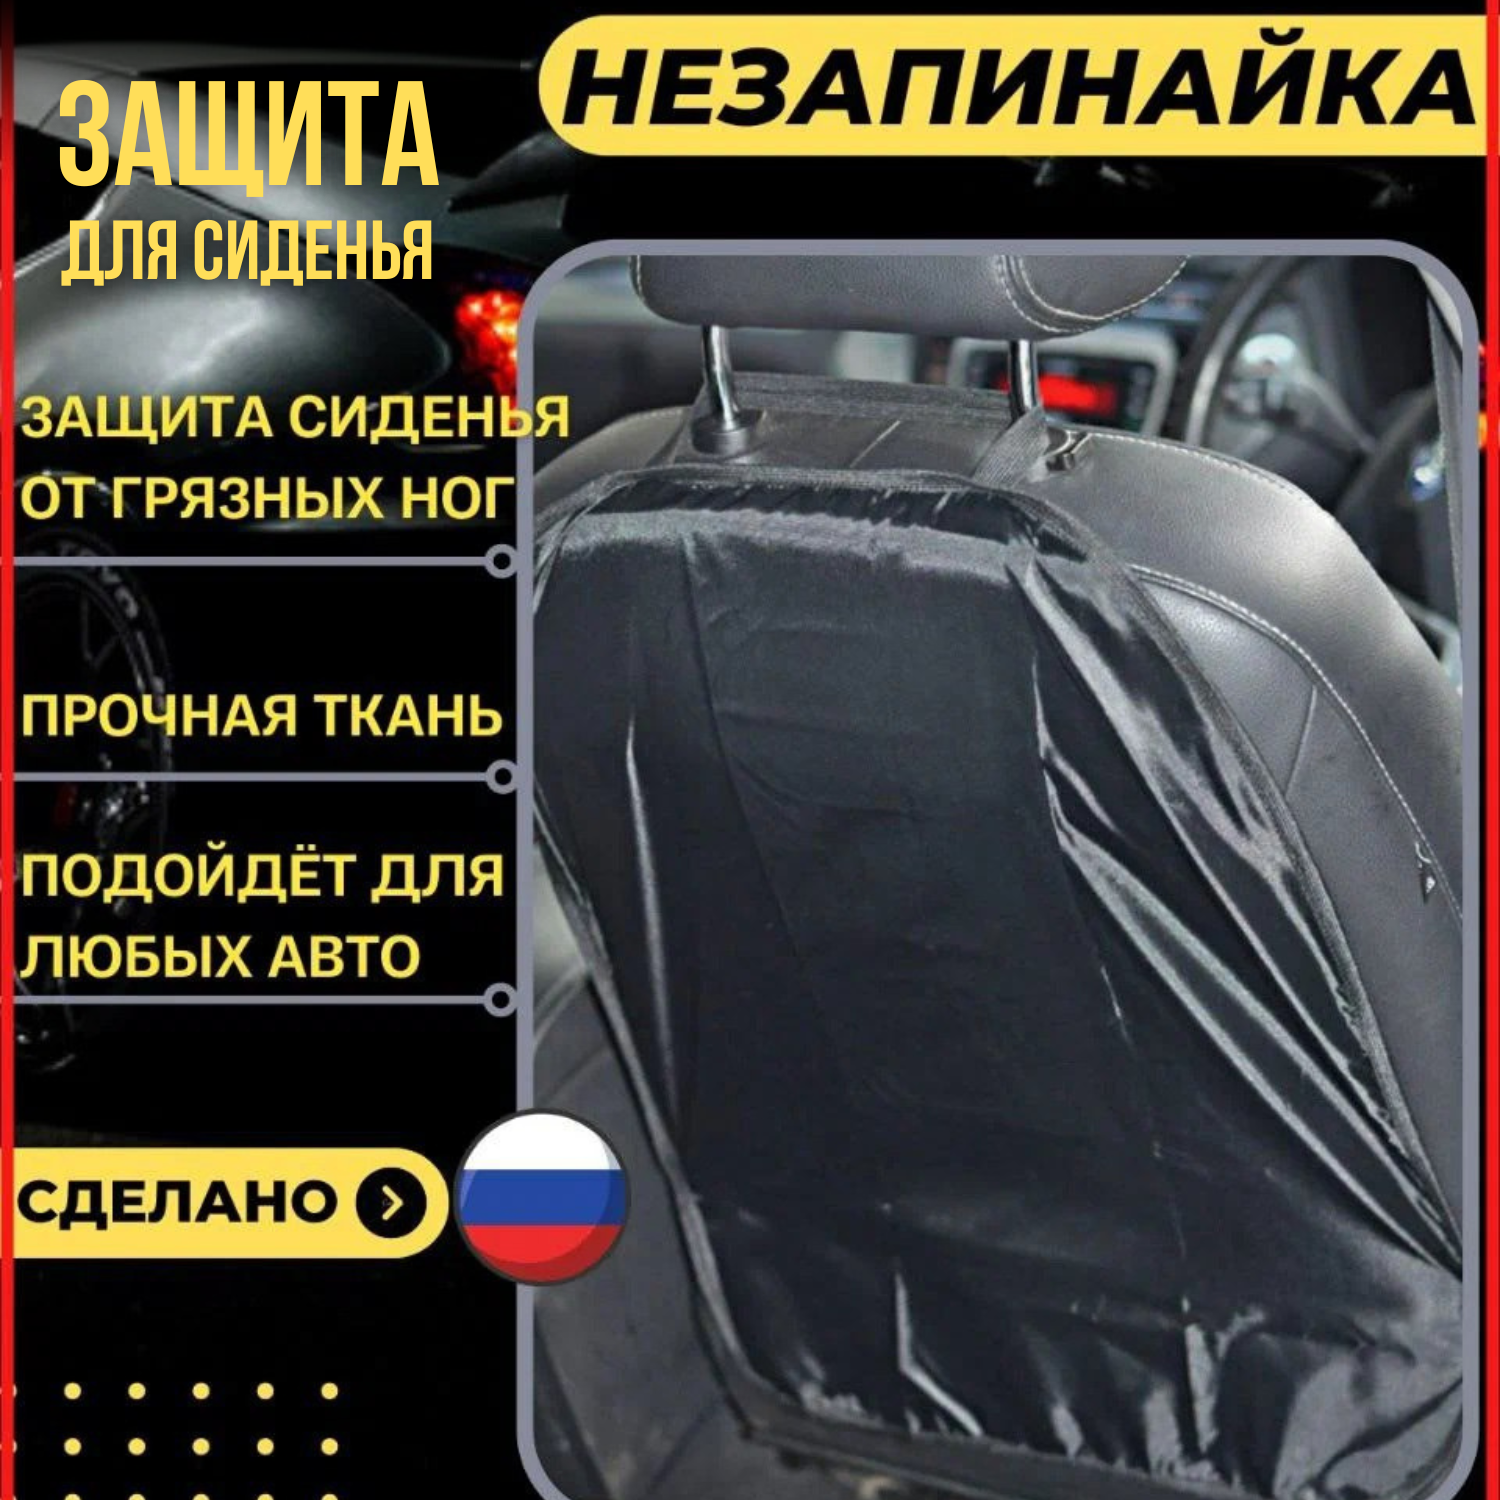 Защитная накладка на сиденье автомобиля от грязных ног